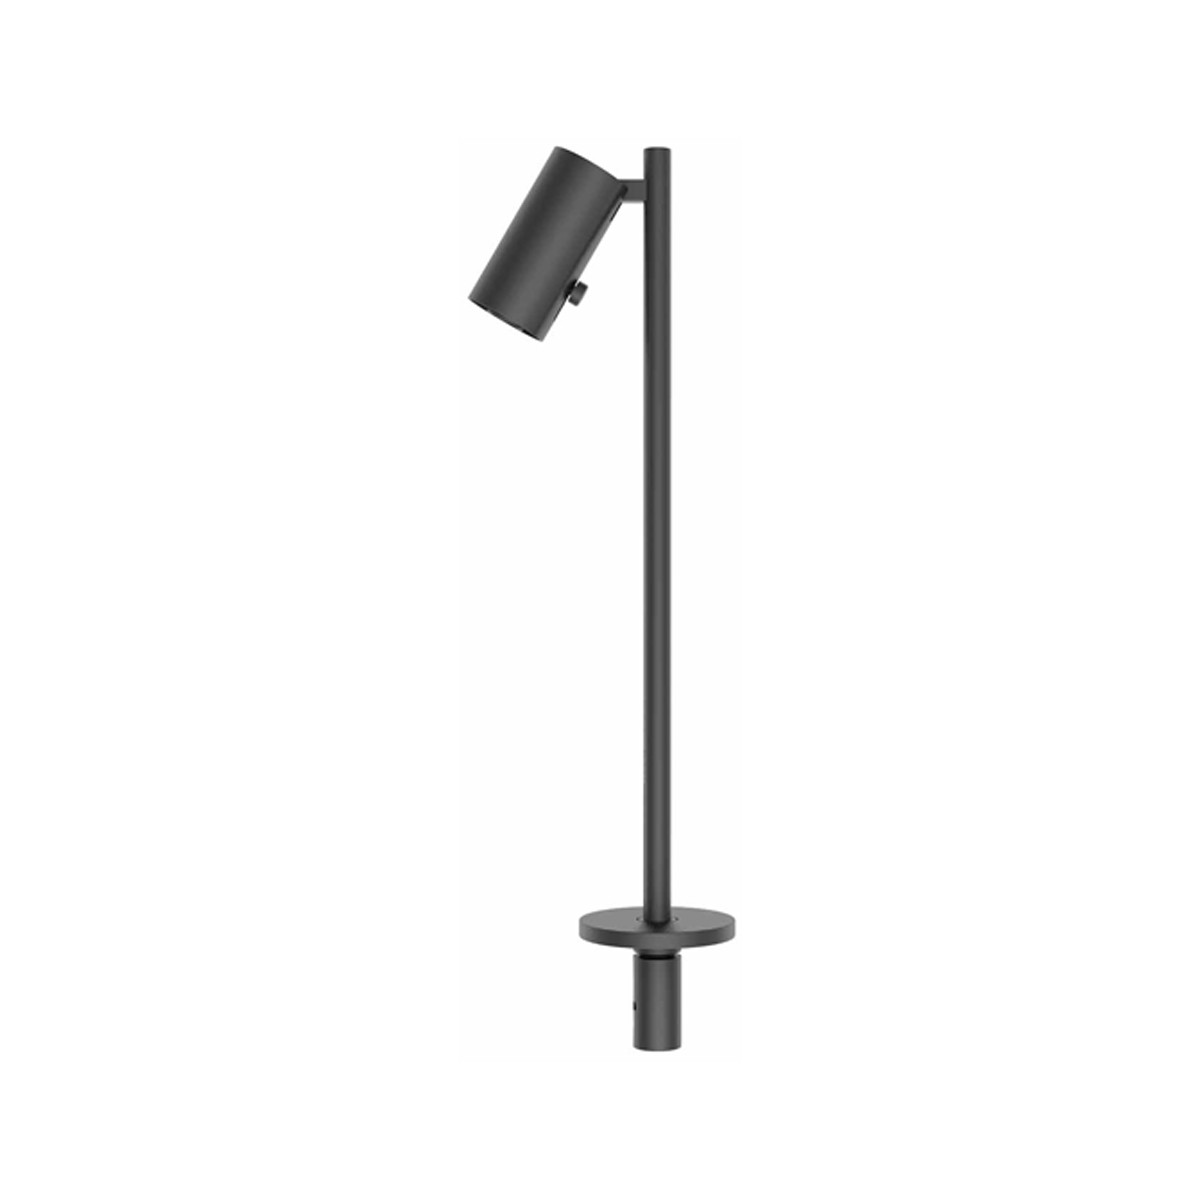 φ25 flagpole vertical adjustable focus LED spotlight